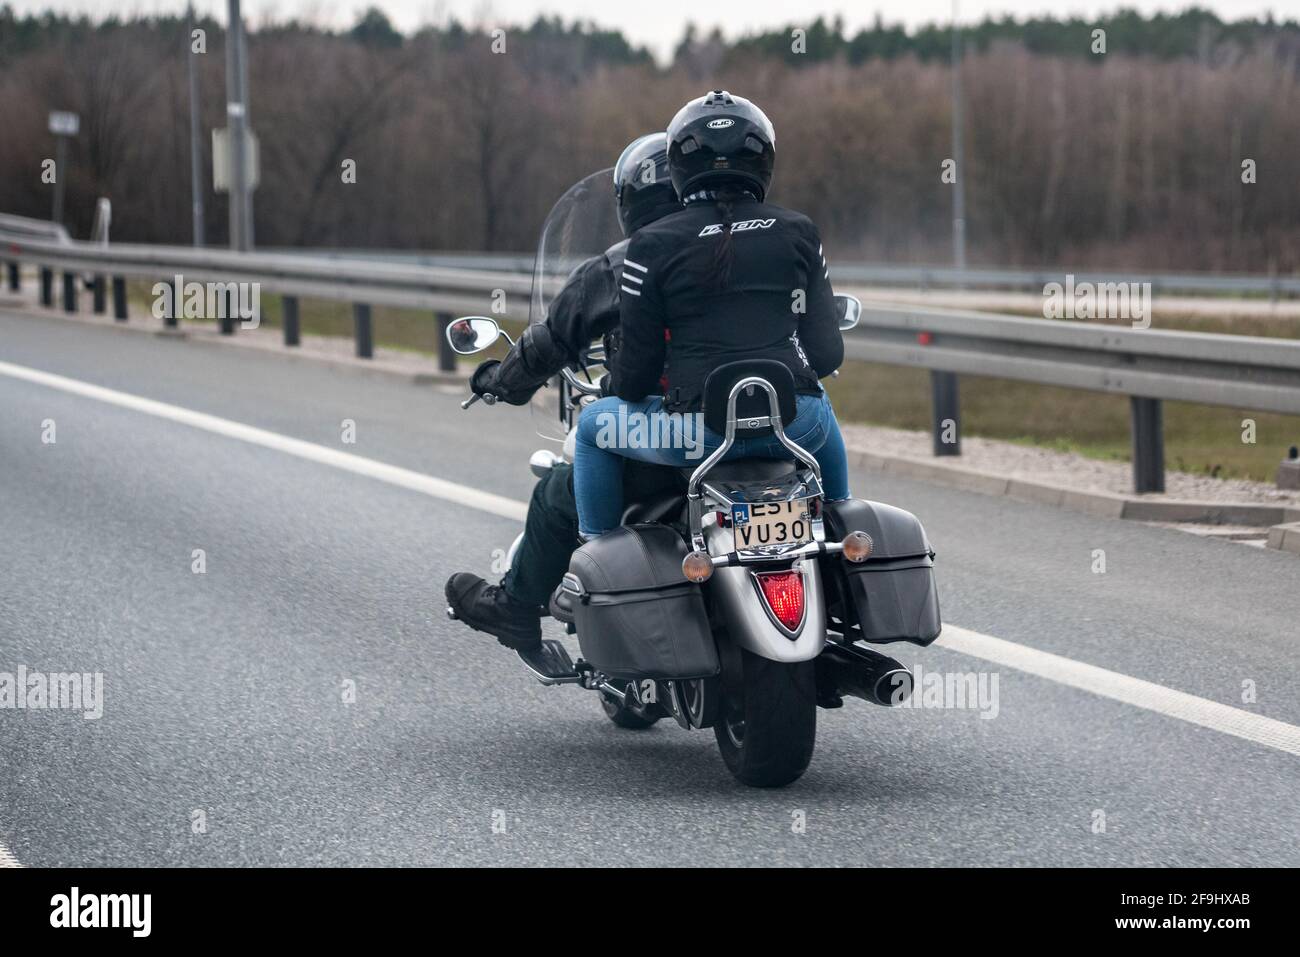 Wroclaw, Pologne - 11 avril 2021 : moto classique avec deux personnes sur l' autoroute. Conduite d'une moto sur l'autoroute Photo Stock - Alamy